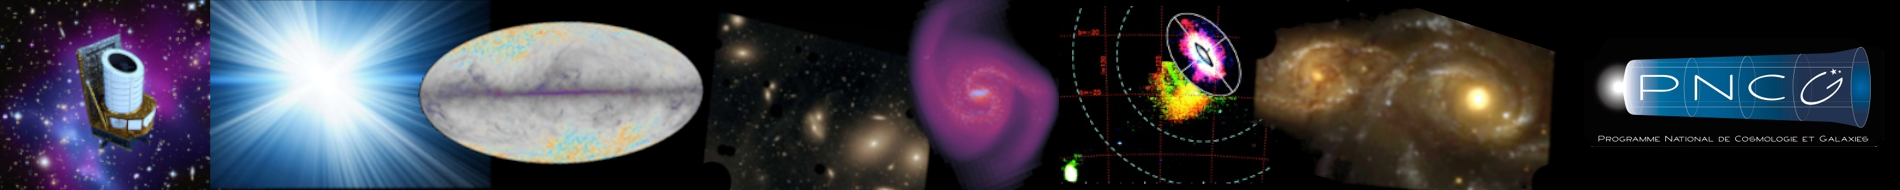 Programme National de Cosmologie et Galaxies